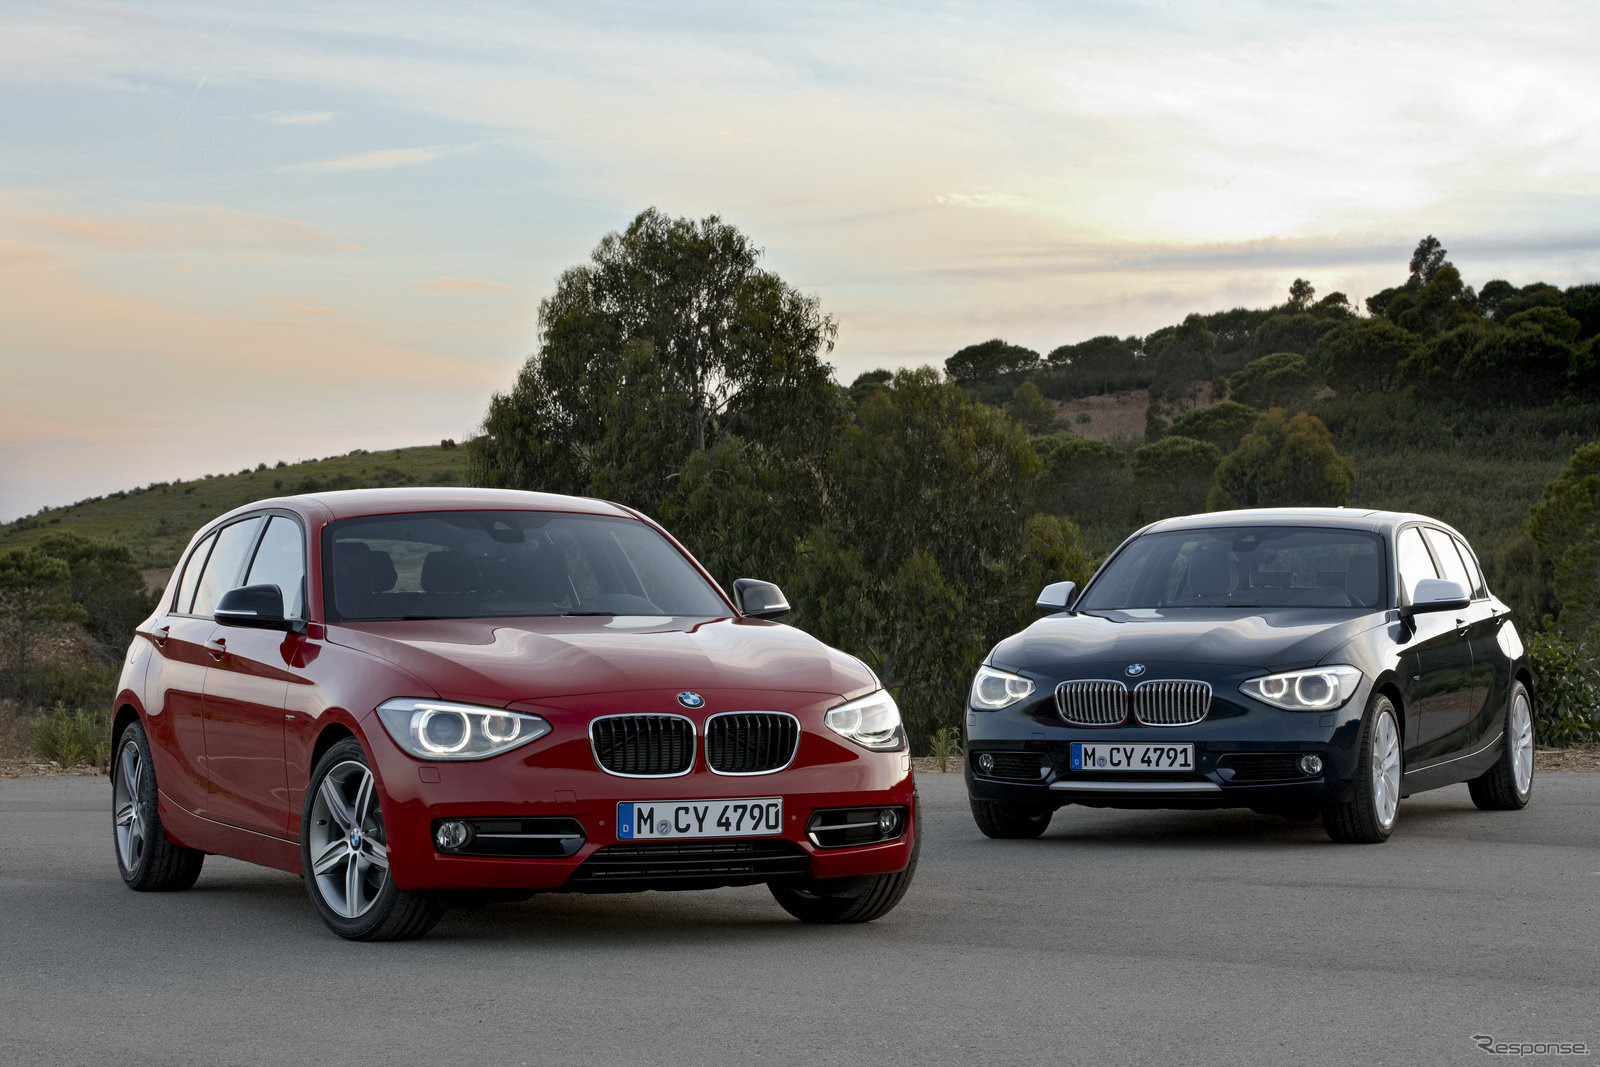 新型BMW 1シリーズ